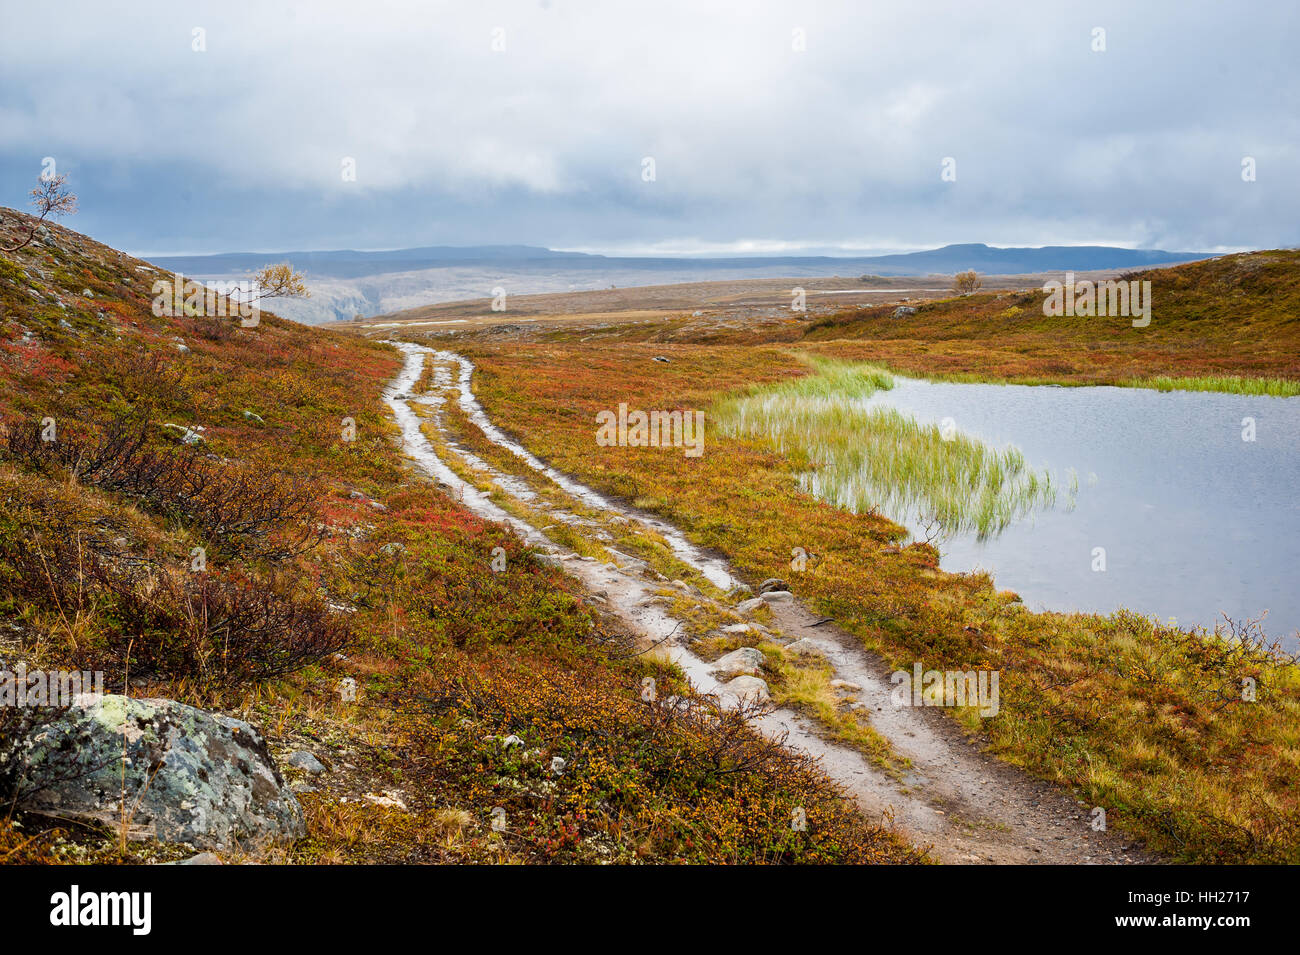 Suciedad en carretera mojada páramos suelo junto a un pequeño estanque en un desolado valle. Alta, Finnmarksvidda meseta montañosa, Noruega. Foto de stock